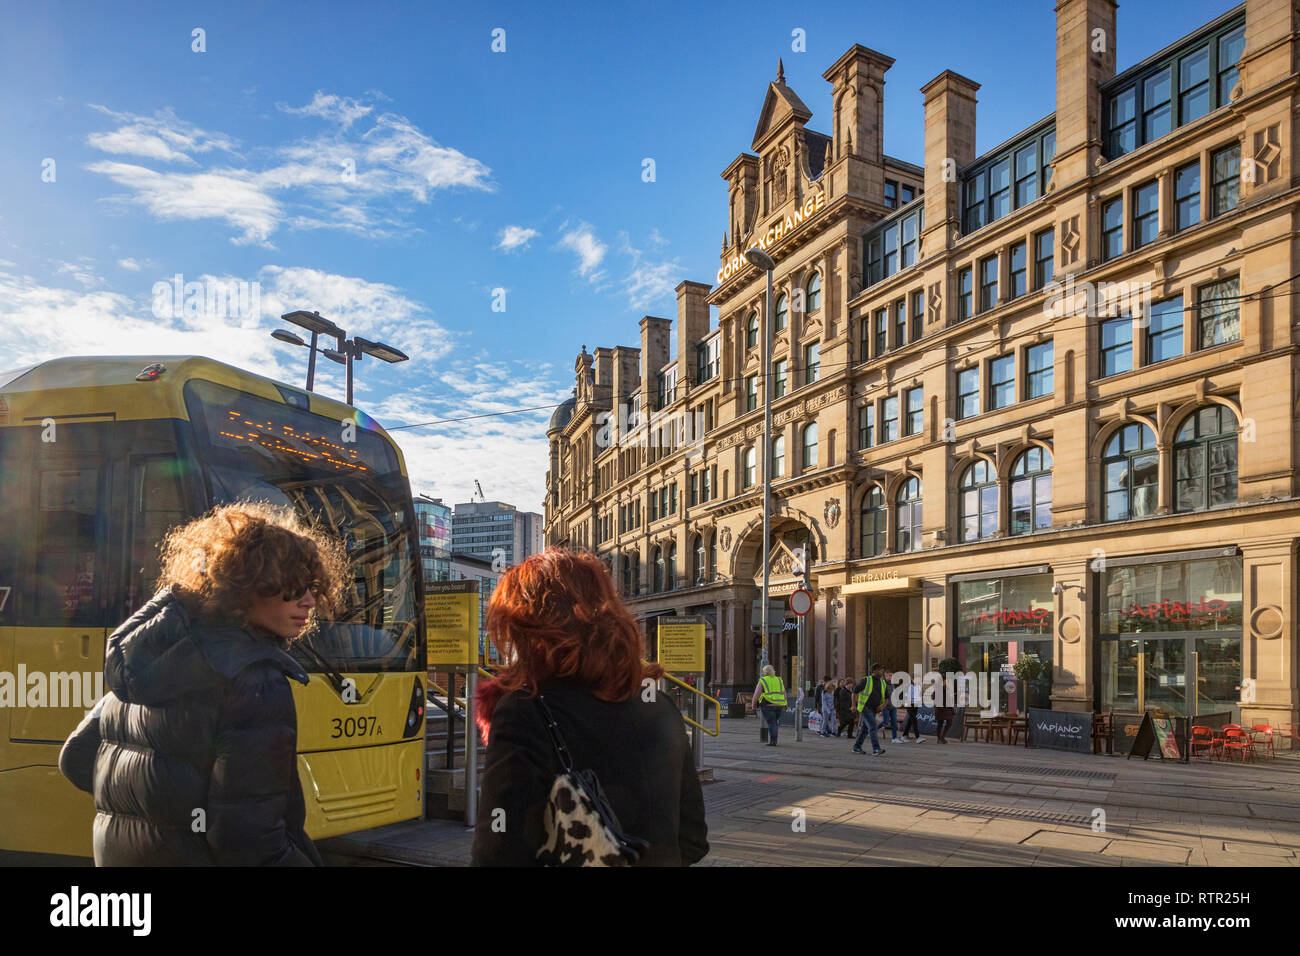 2 Septembre 2018 : Manchester, UK - Exchange Square, avec Corn Exchange building, tramway Metrolink, deux jeunes femmes aux cheveux rétro-éclairé, et l'arrondi. Banque D'Images